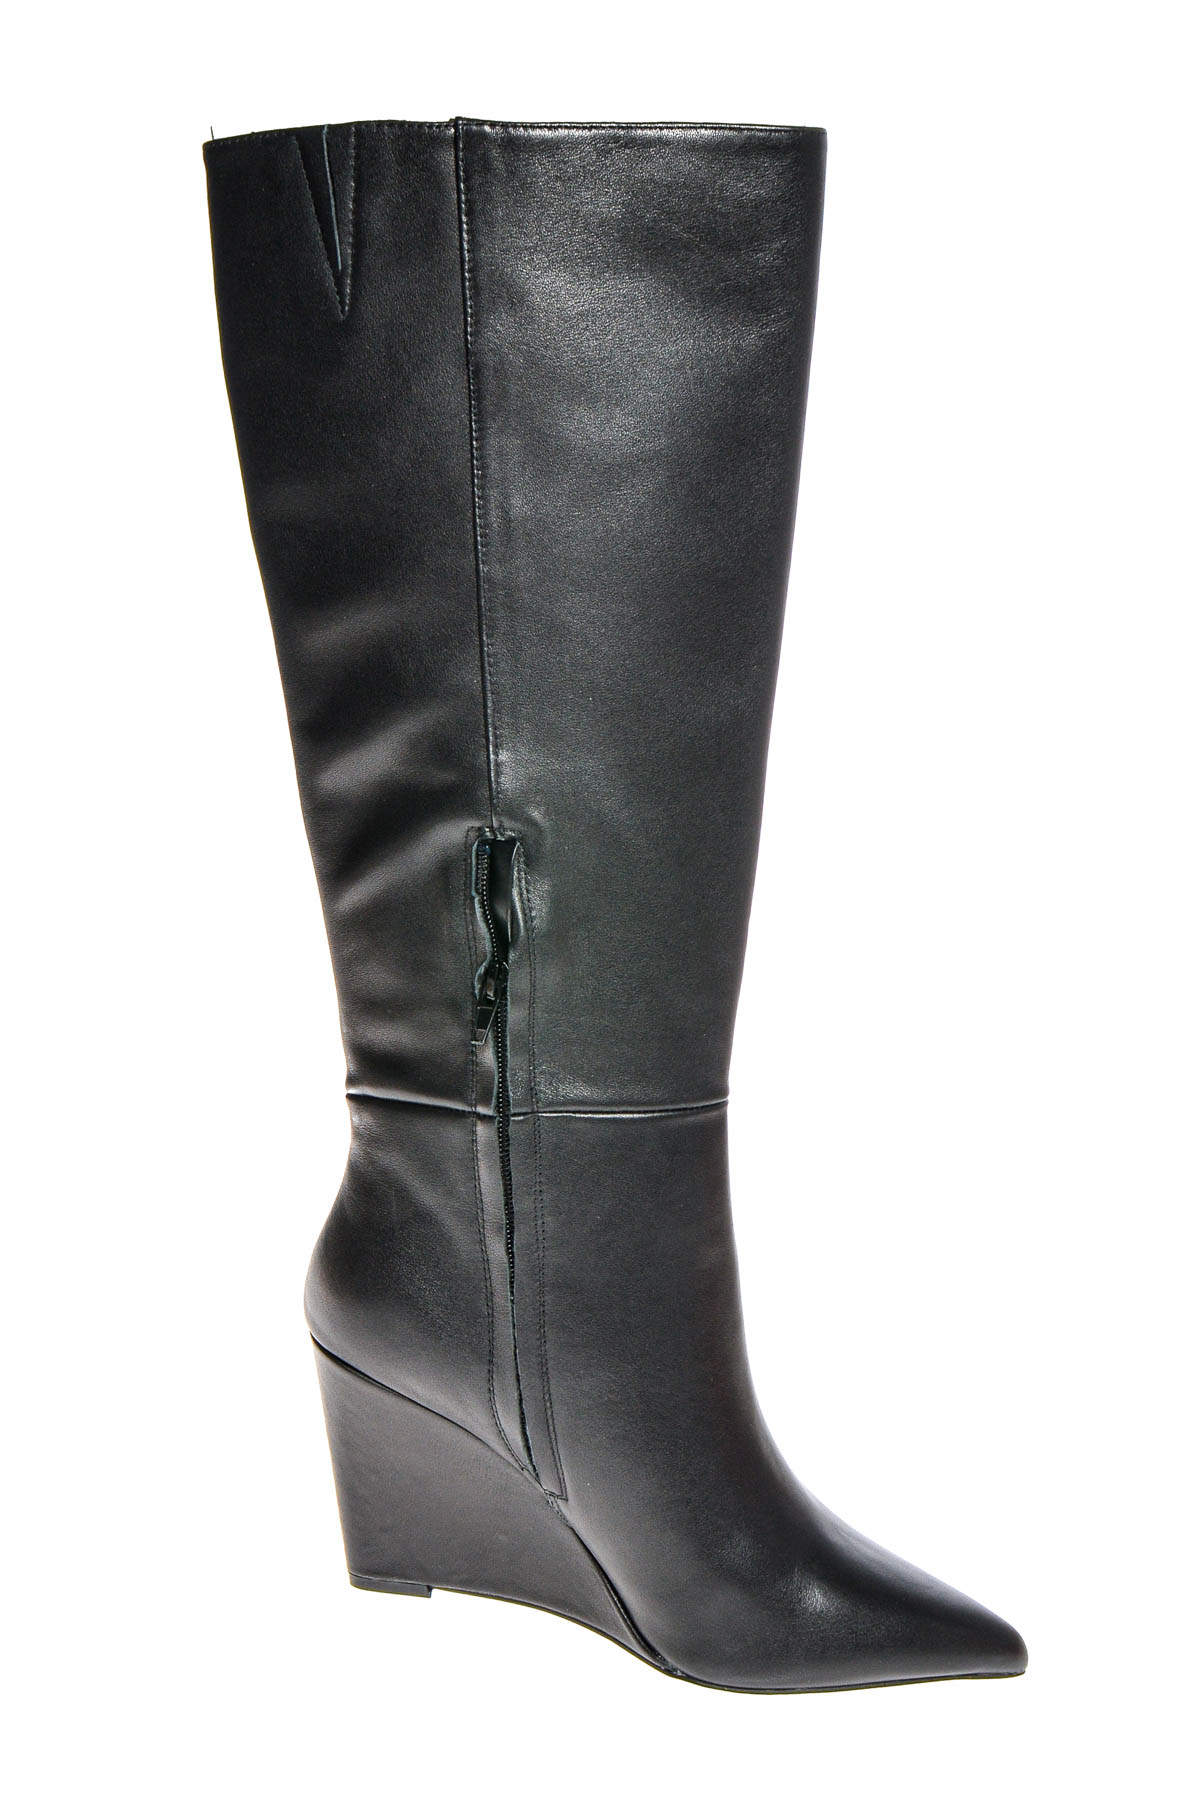 Women's boots - Zign - 2